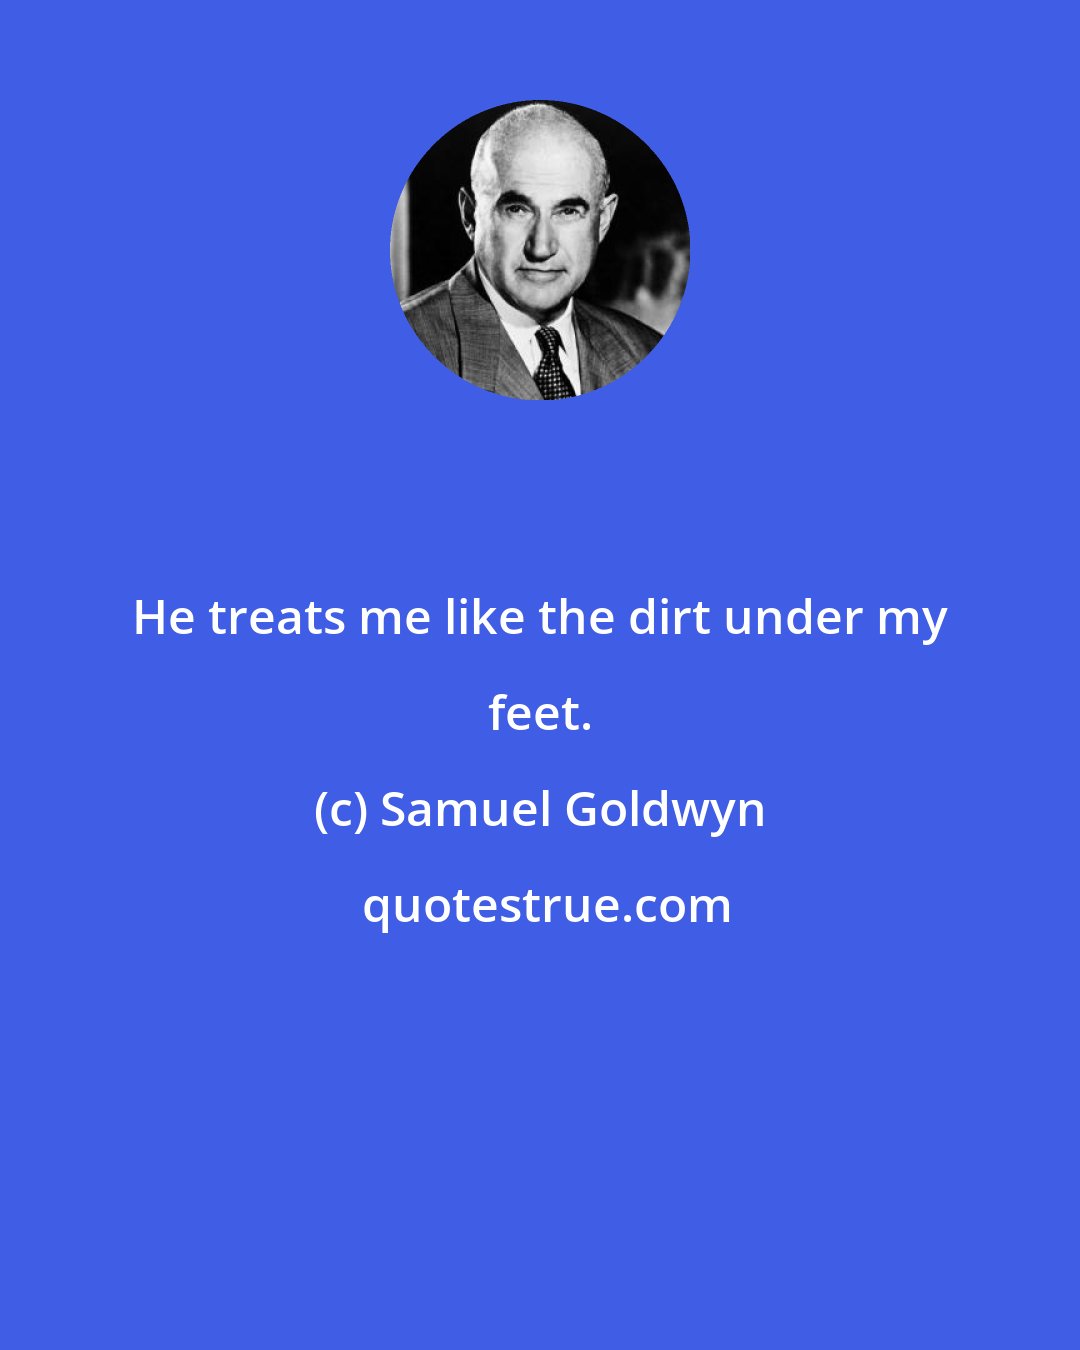 Samuel Goldwyn: He treats me like the dirt under my feet.